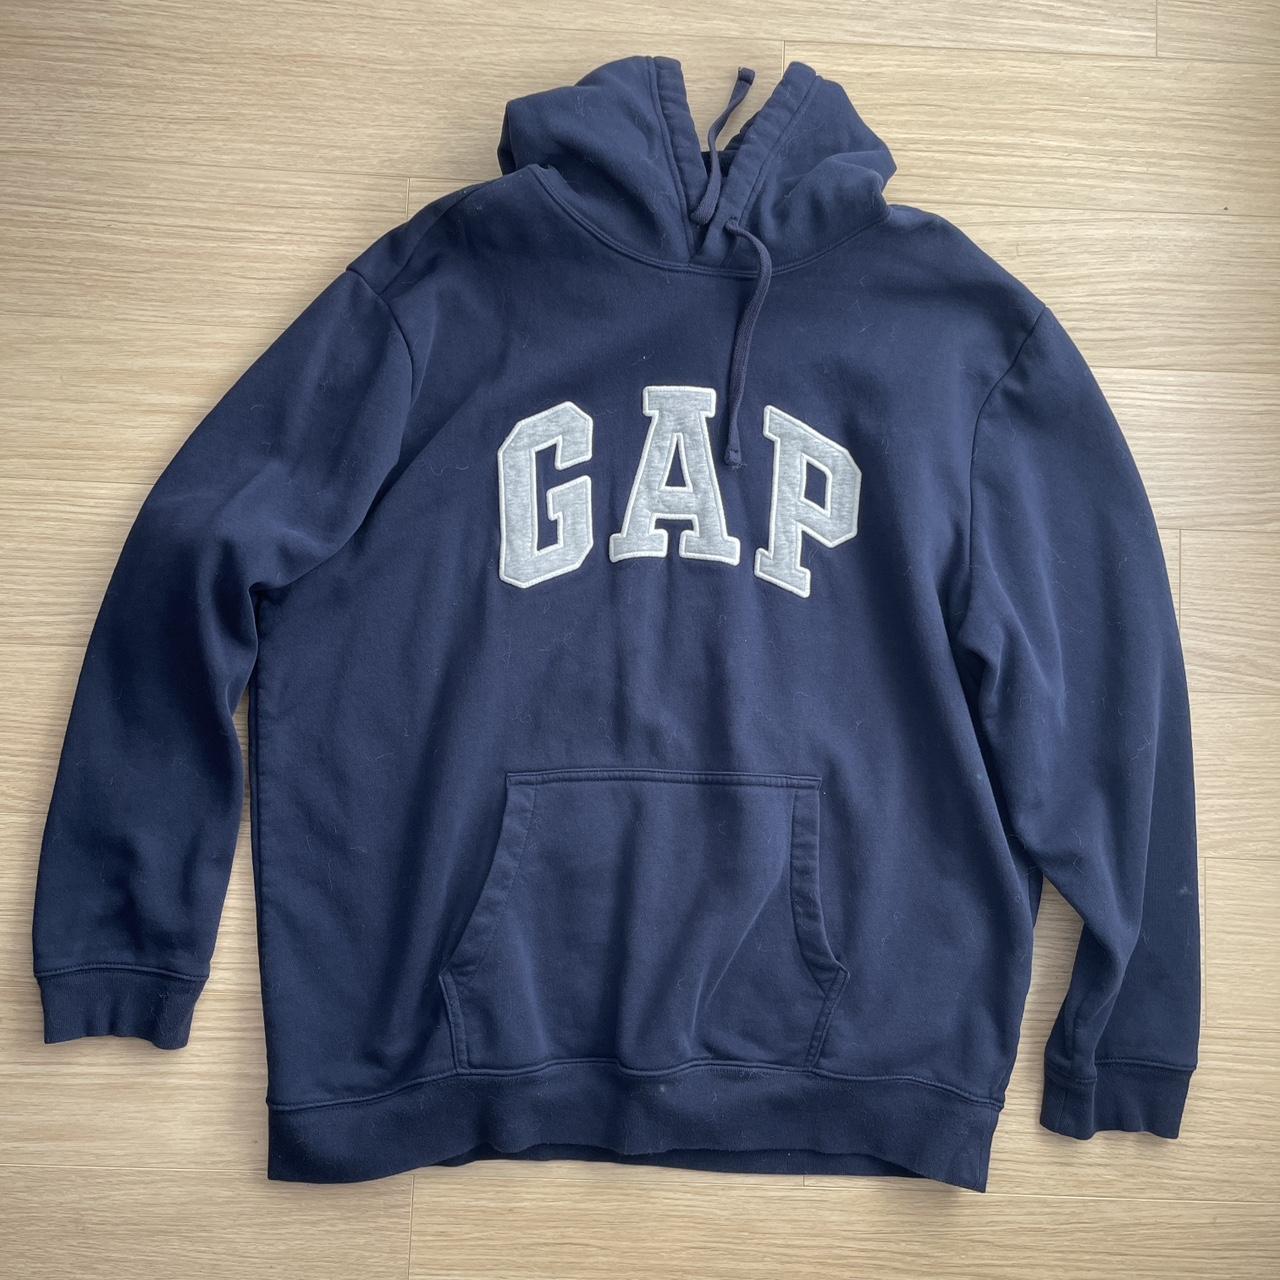 navy blue gap logo hoodie (fits like a large) - Depop